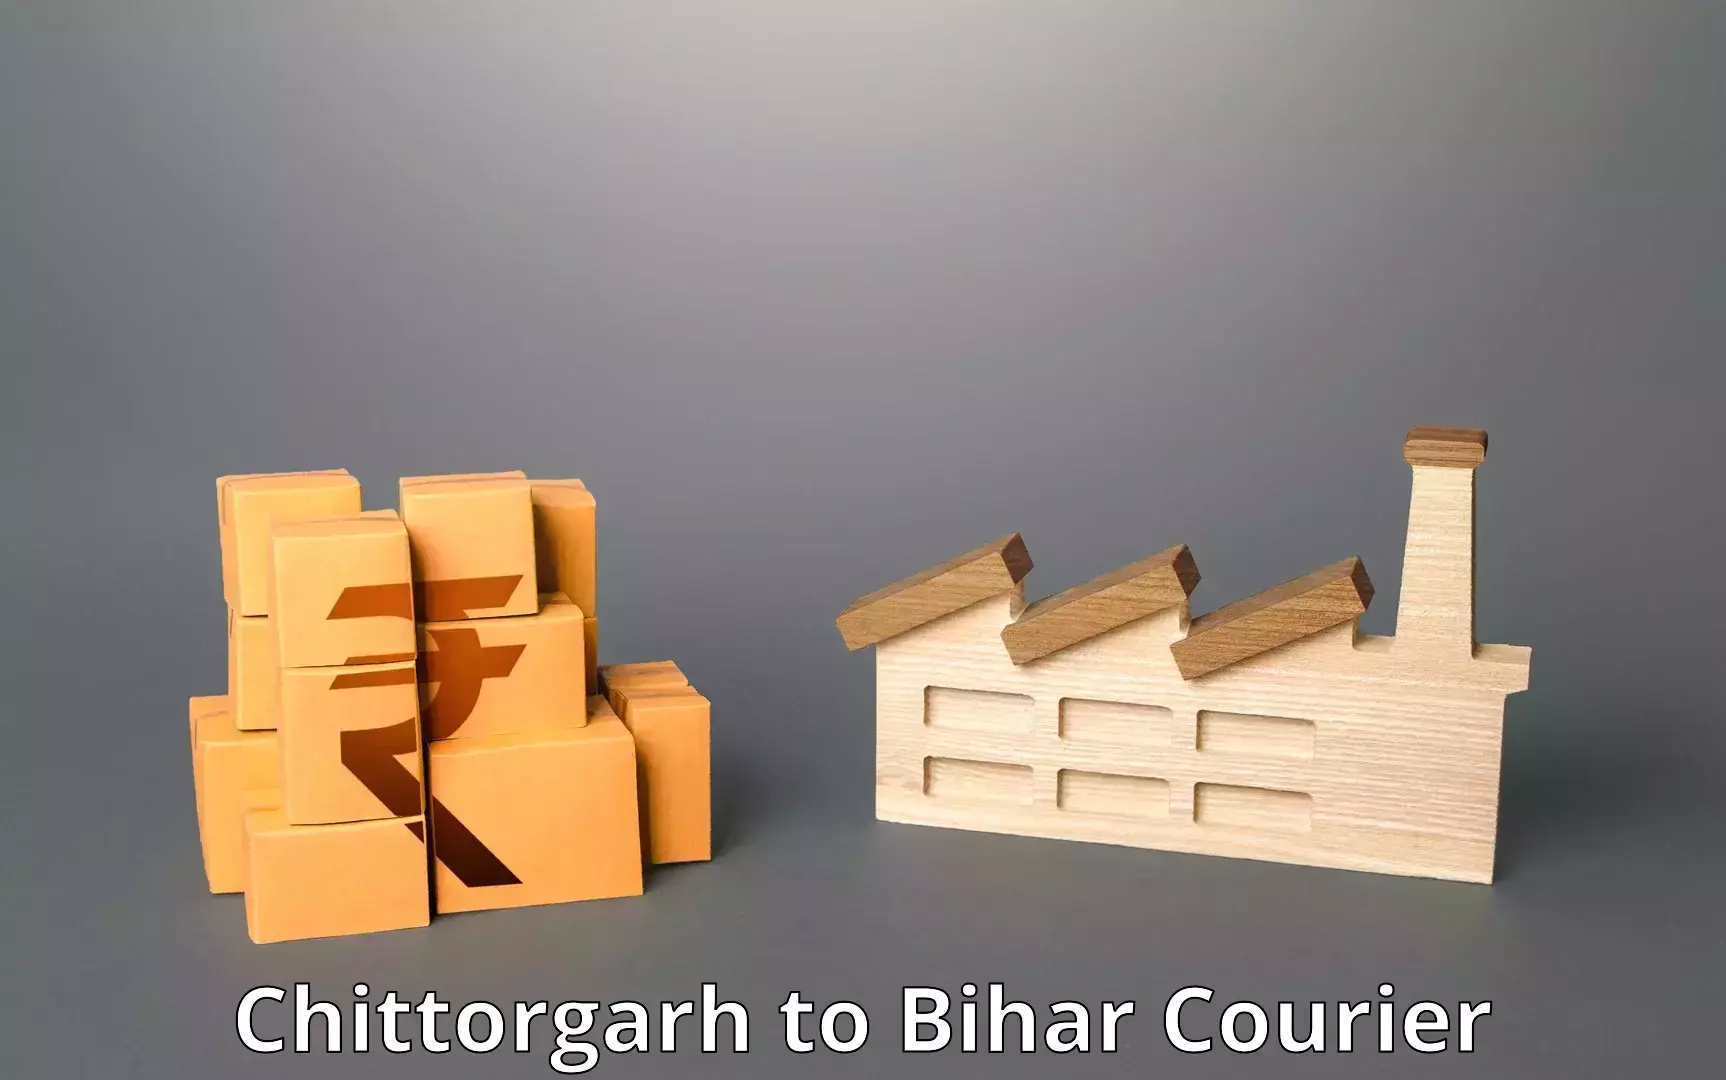 On-call courier service Chittorgarh to IIIT Bhagalpur